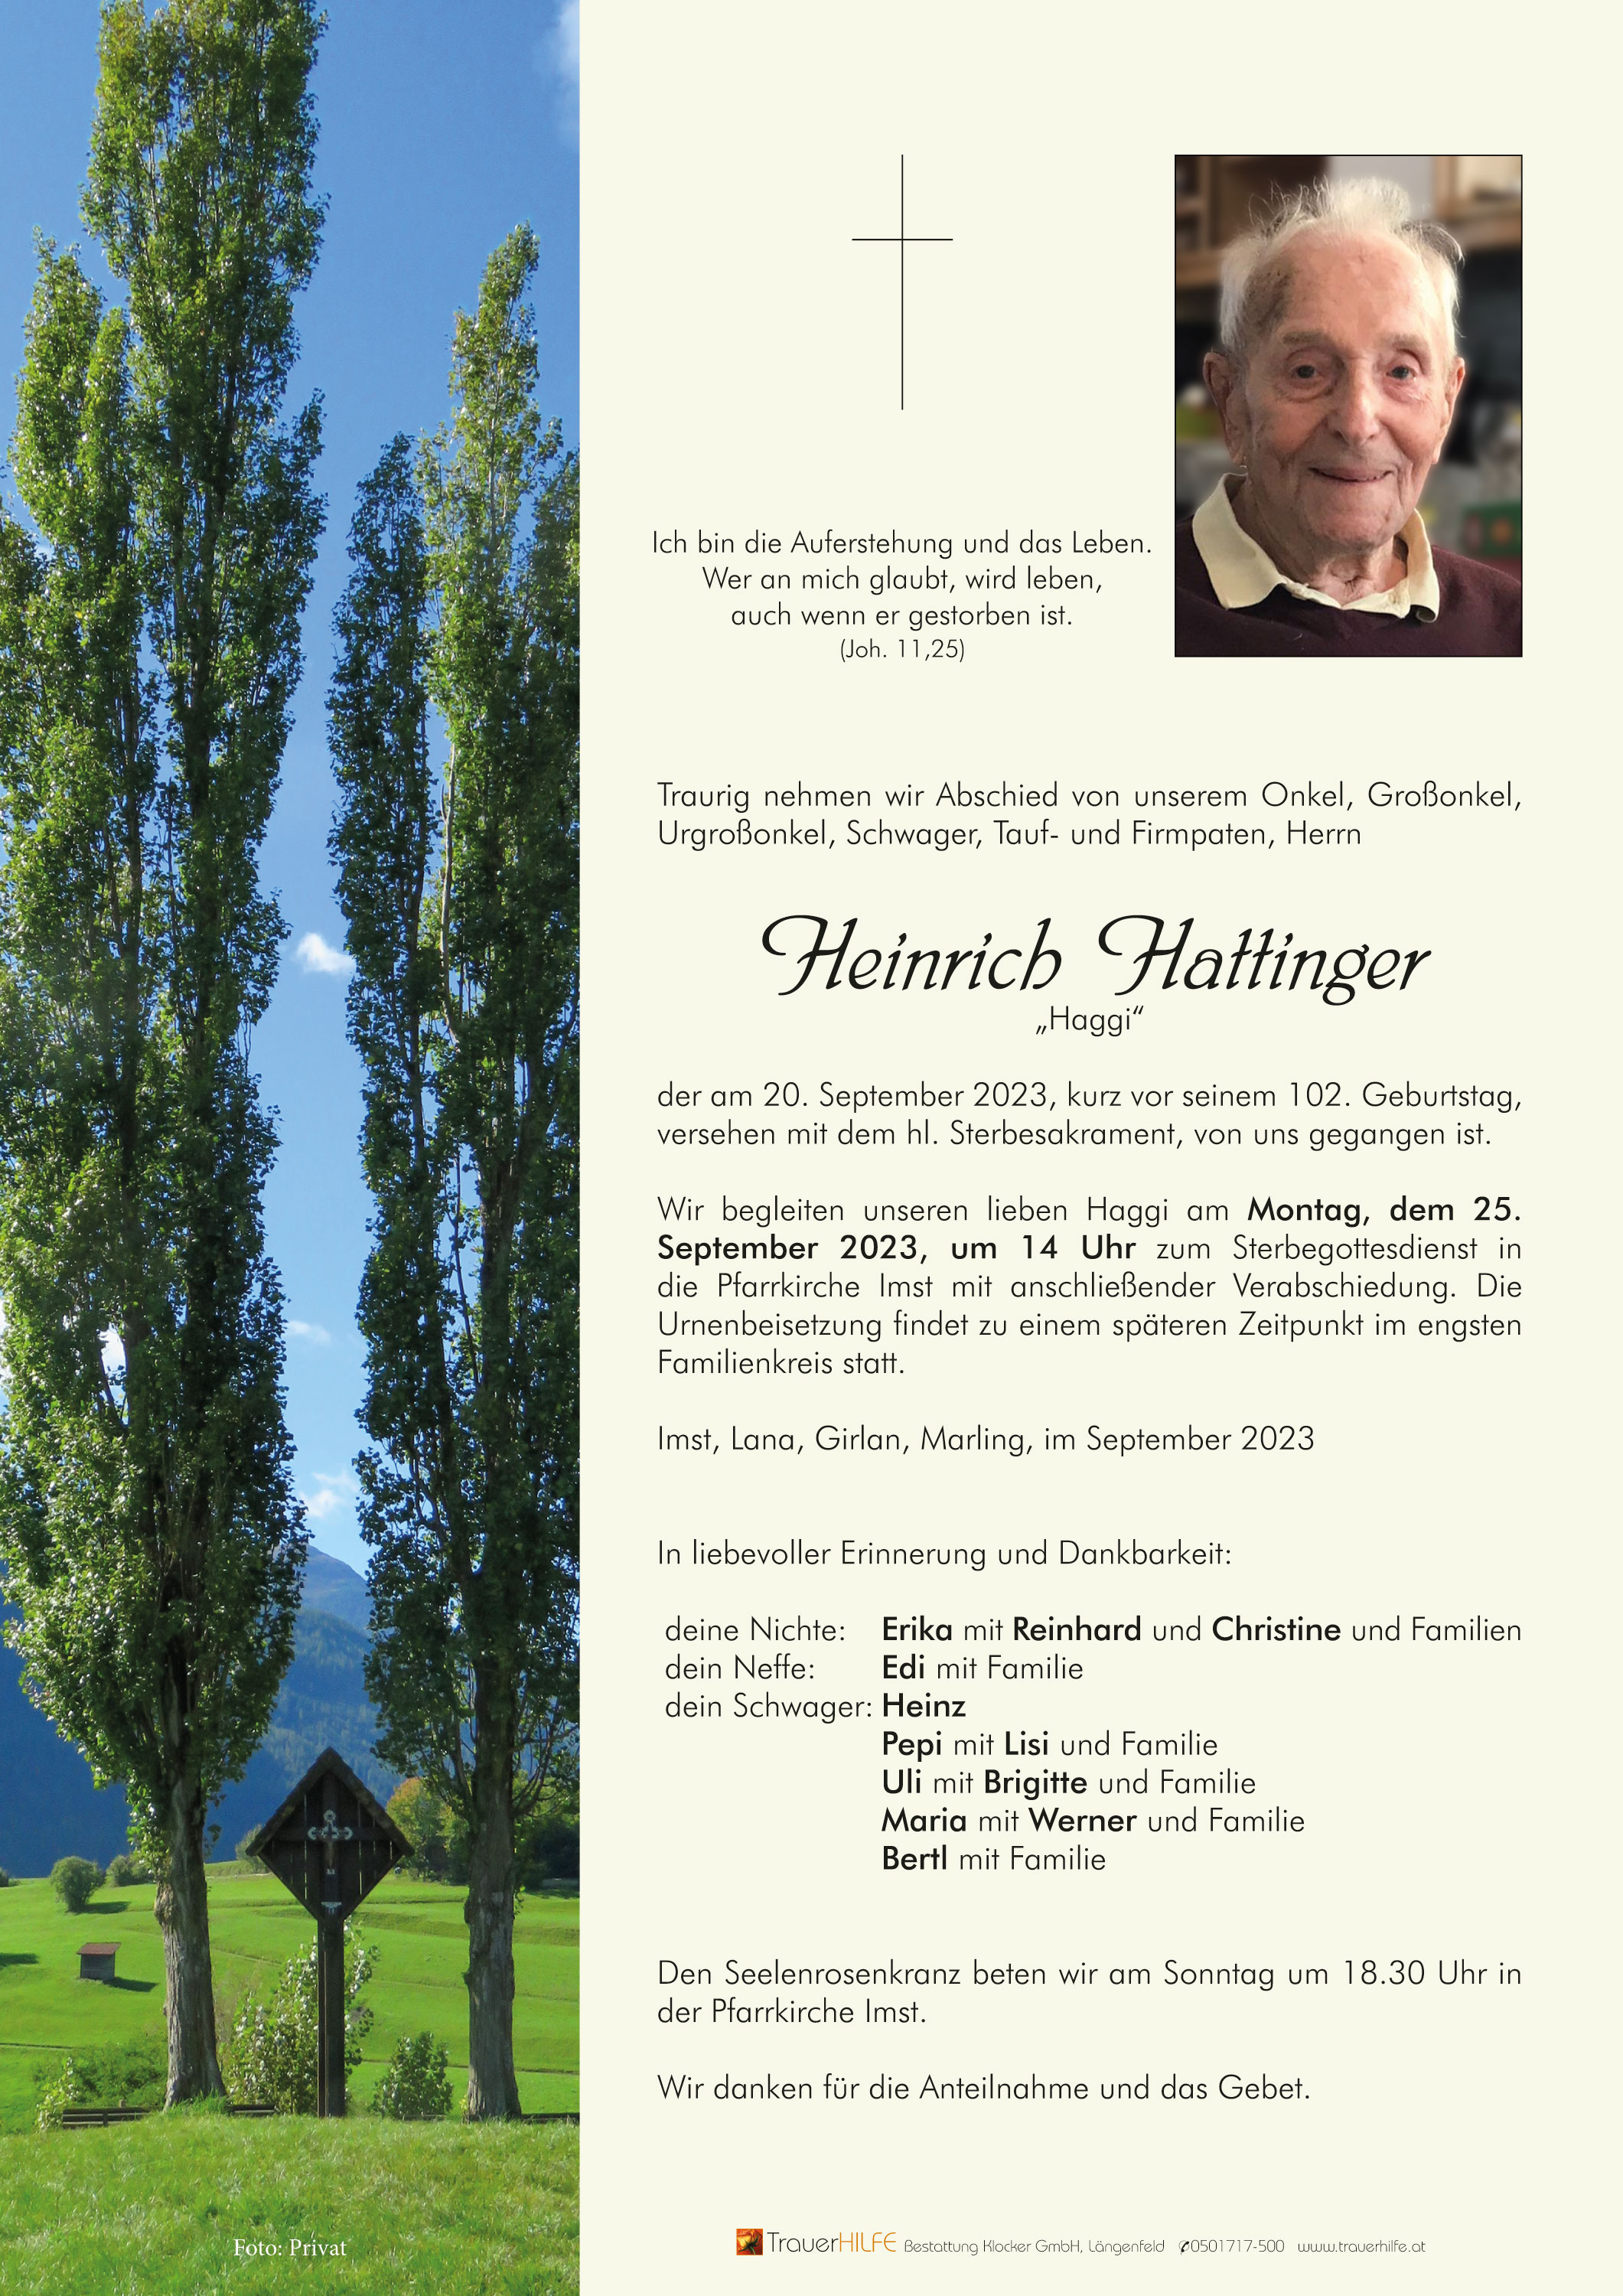 Heinrich Hattinger